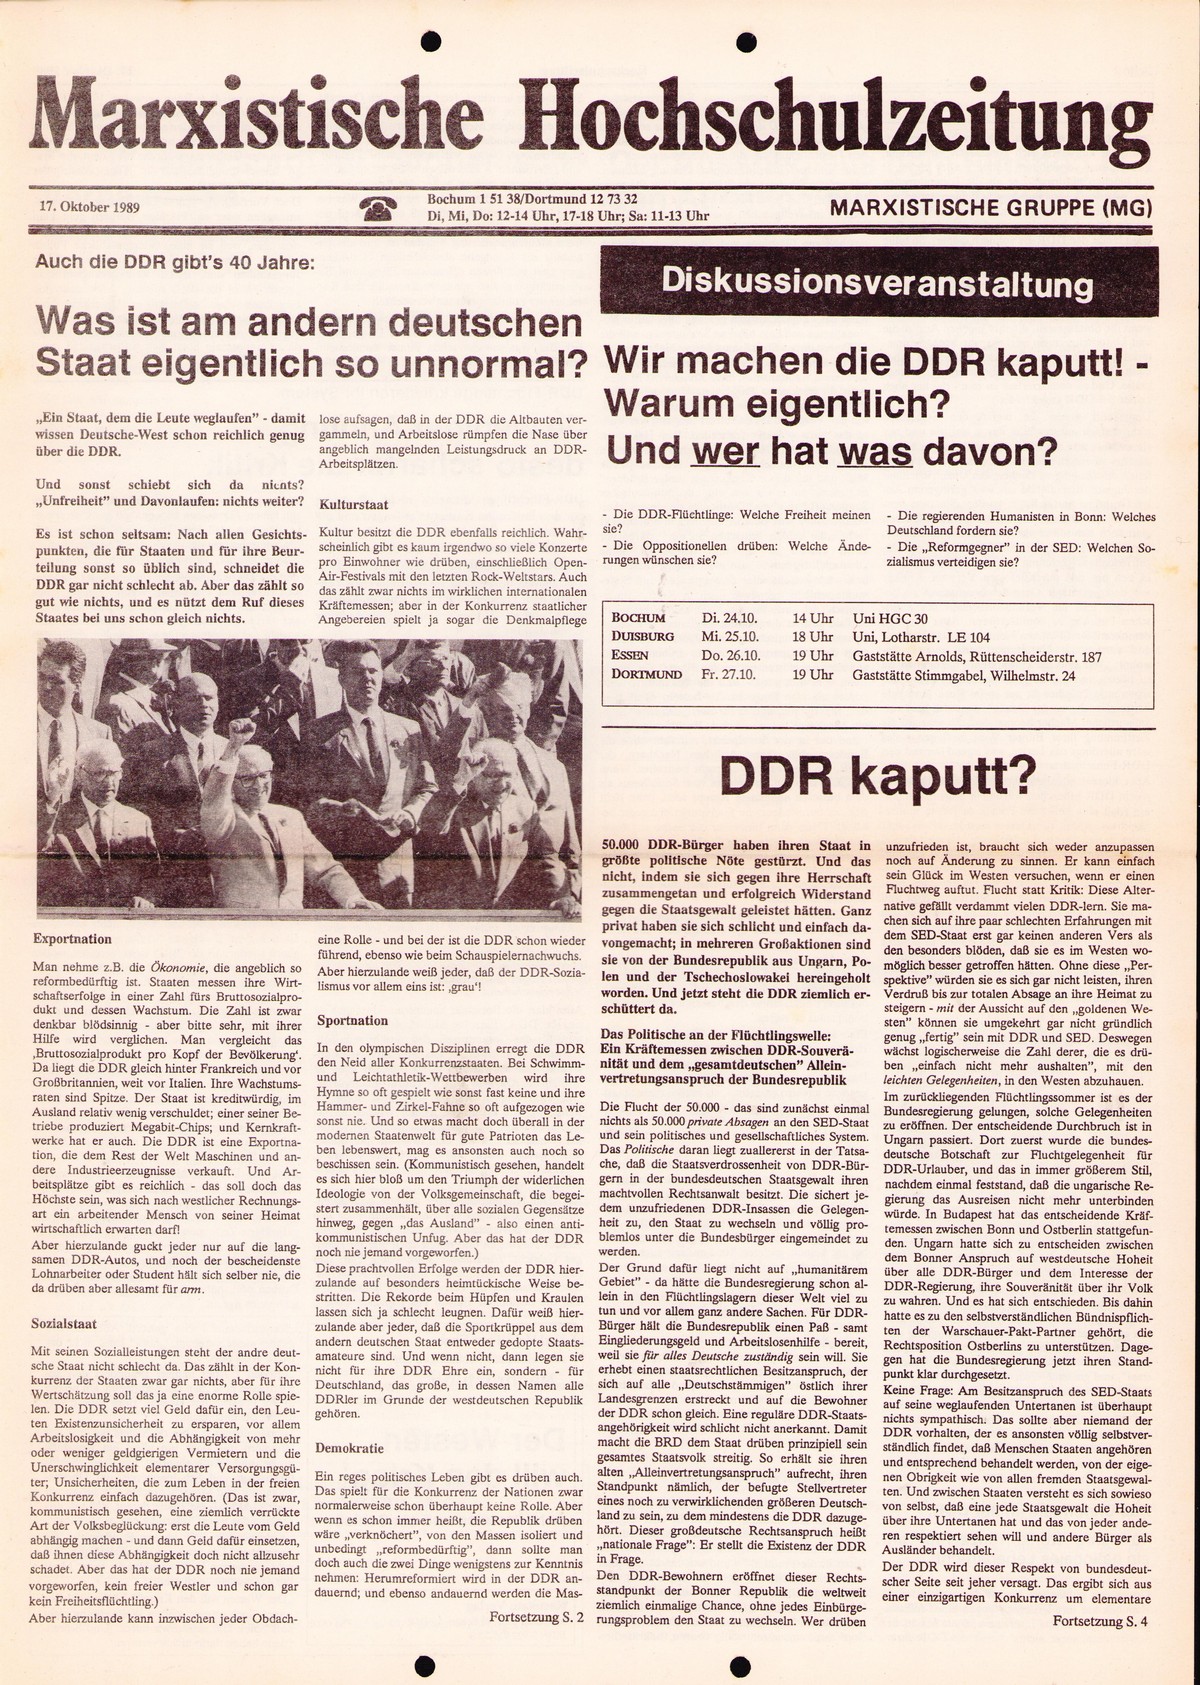 Ruhrgebiet_MG_Marxistische_Hochschulzeitung_19891017_001